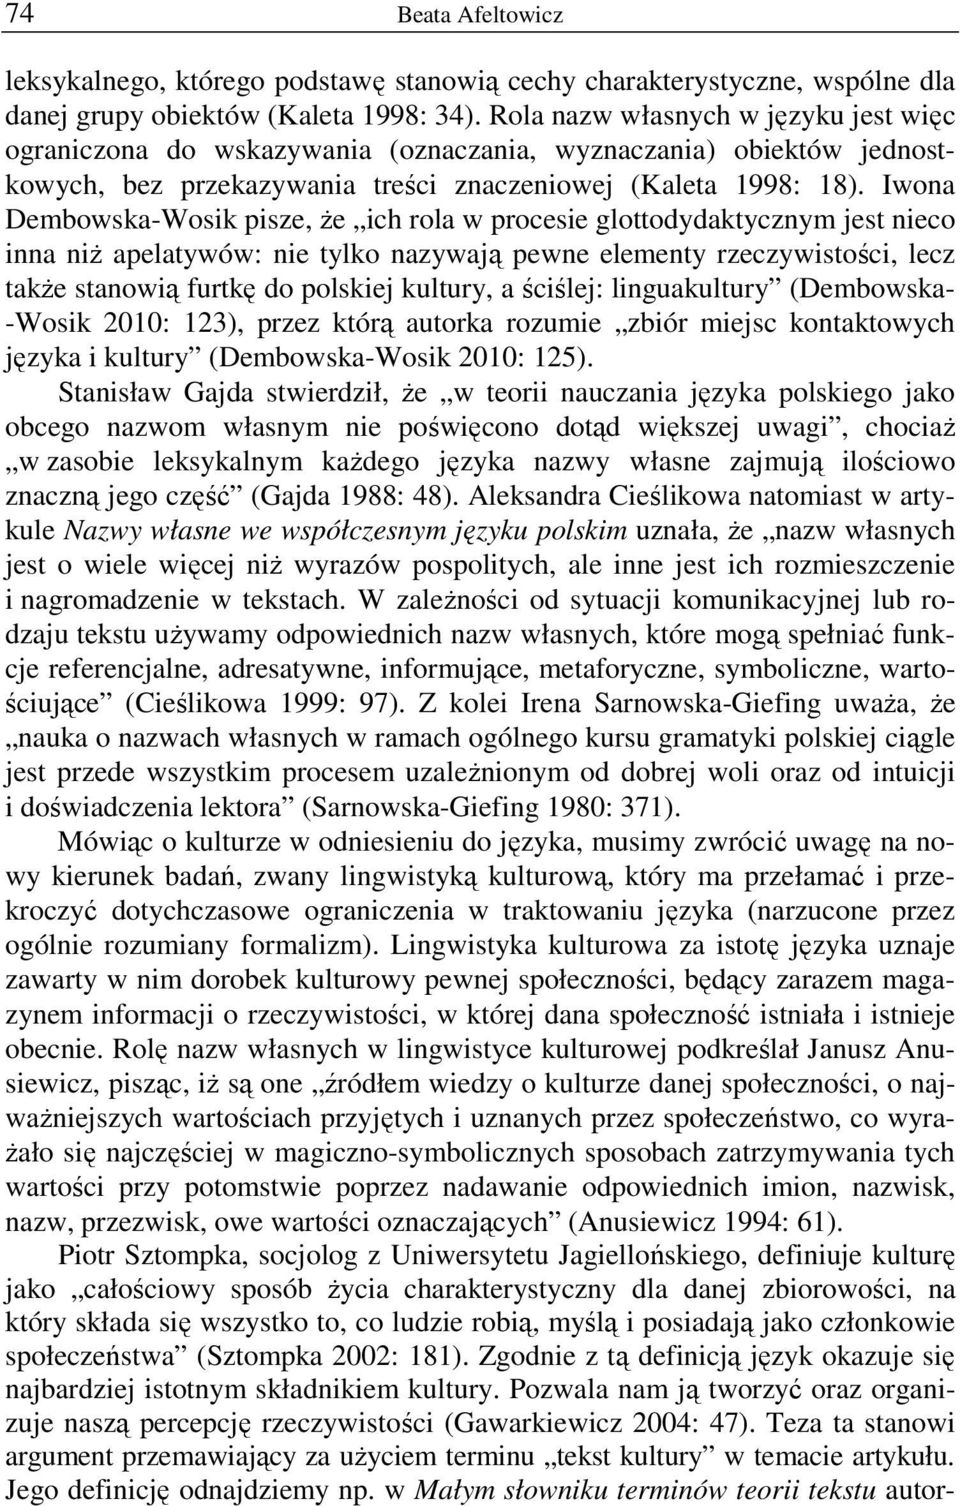 Iwona Dembowska-Wosik pisze, Ŝe ich rola w procesie glottodydaktycznym jest nieco inna niŝ apelatywów: nie tylko nazywają pewne elementy rzeczywistości, lecz takŝe stanowią furtkę do polskiej